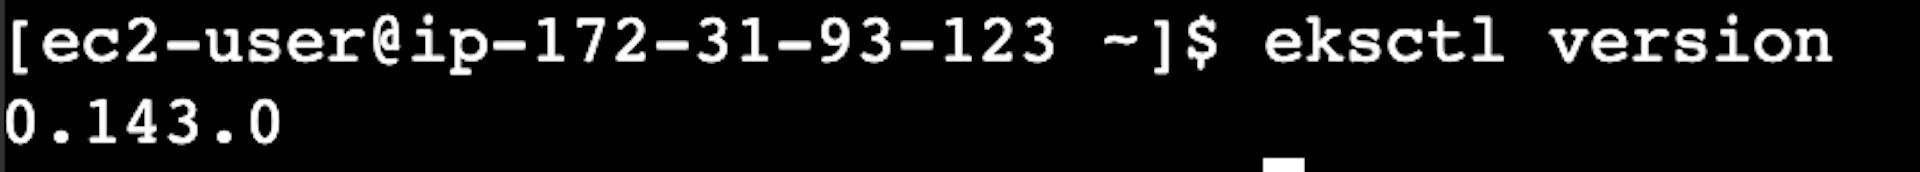 La captura de pantalla del terminal en línea de la instancia del servidor virtual AWS EC2 con la versión eksctl